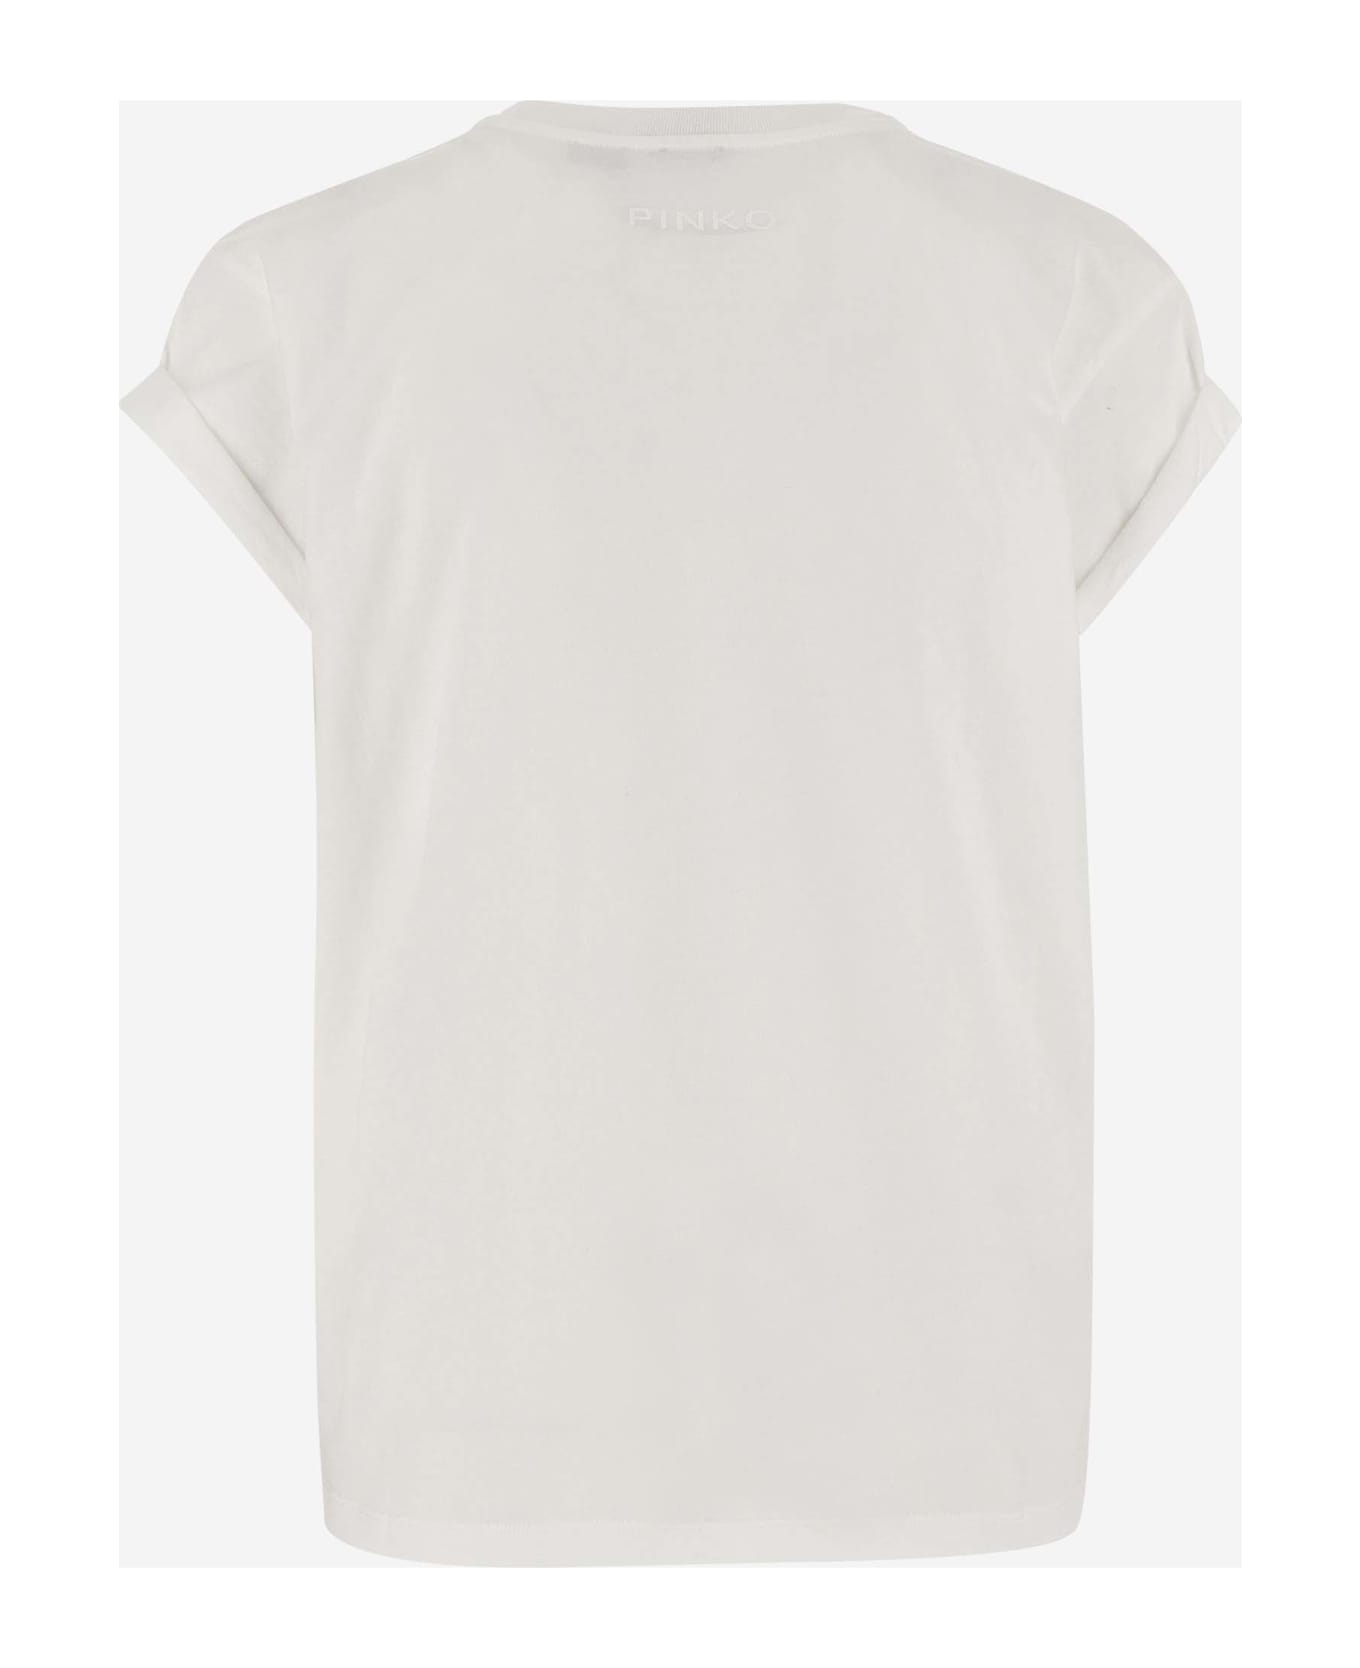 Pinko Love Print Cotton T-shirt - White Tシャツ